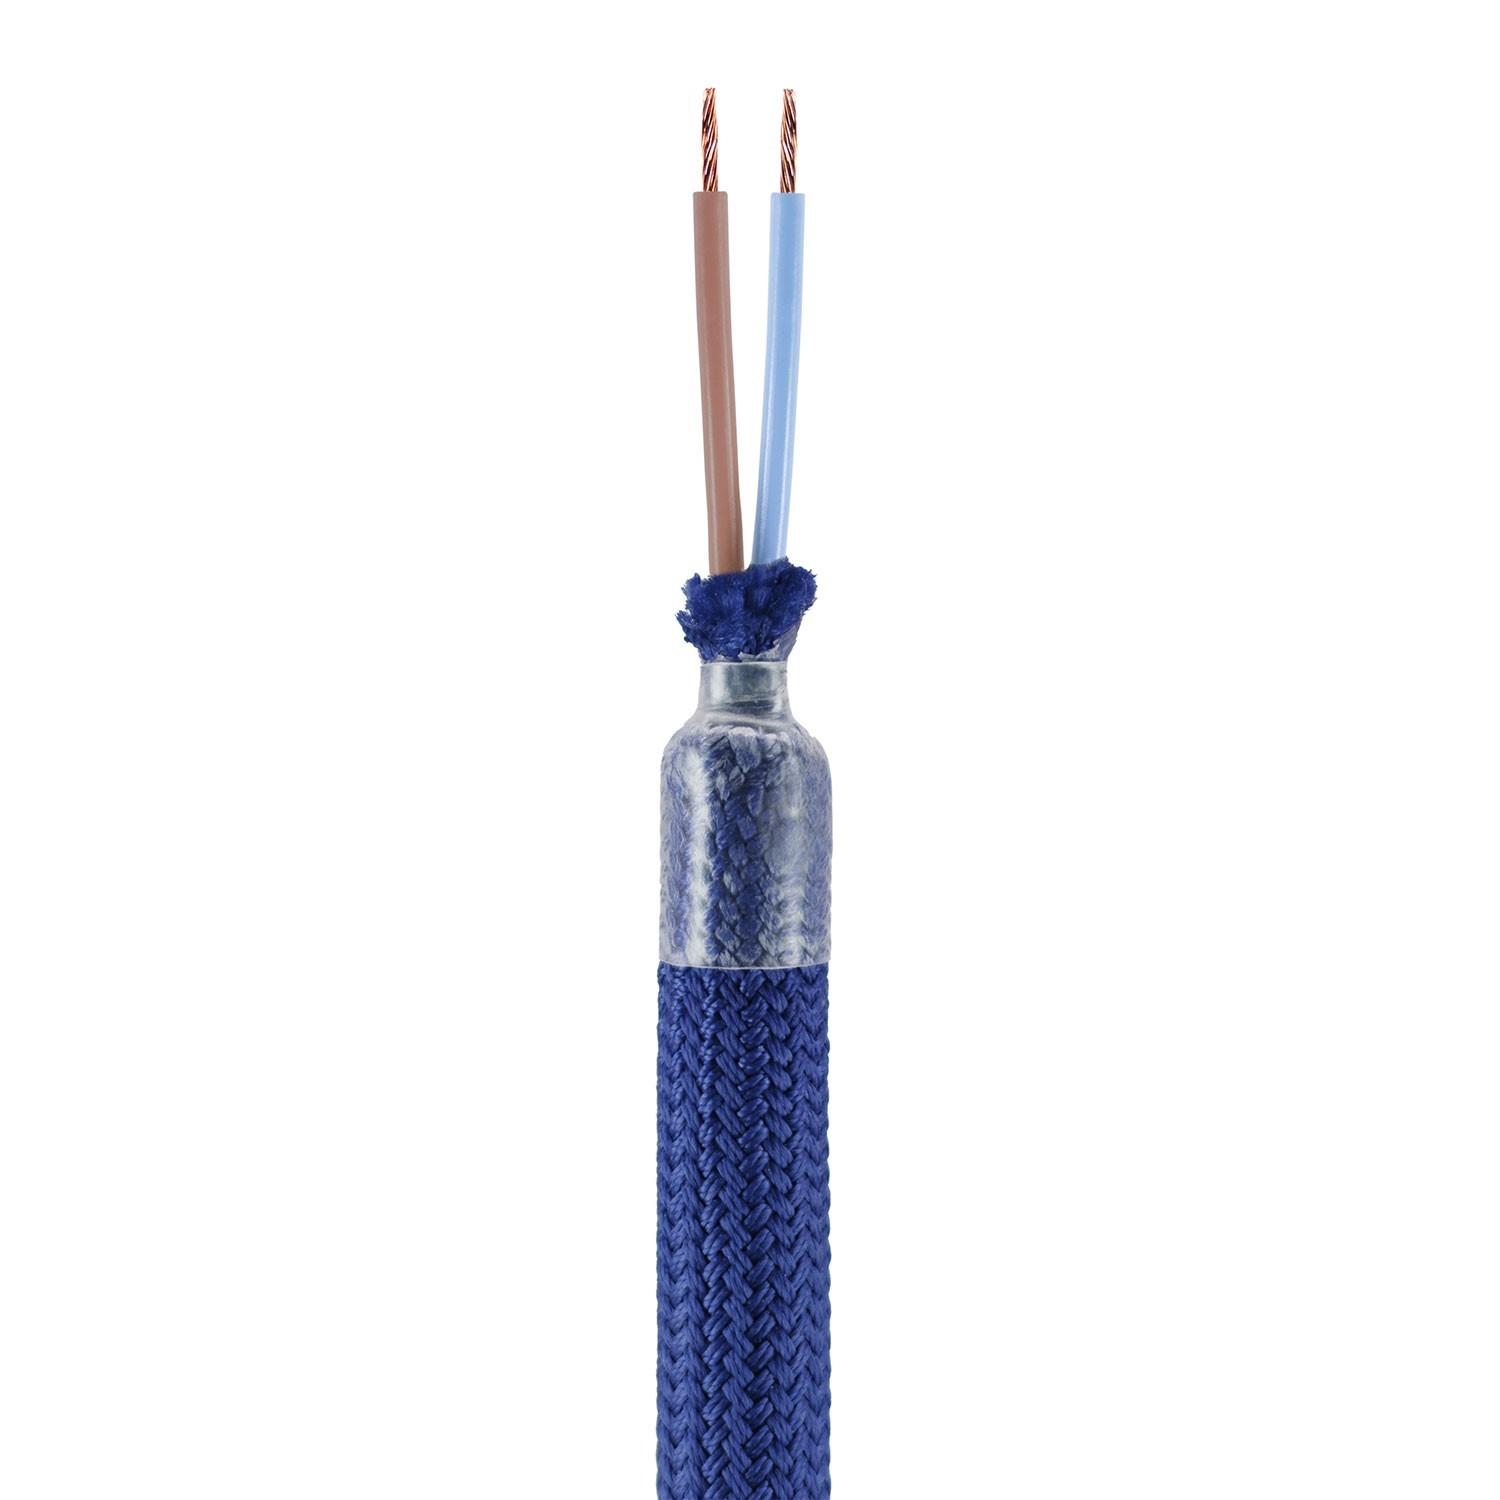 Kit Creative Flex manguera de extensión cubierta de tela RM20 Azul Oscuro con extremos metálicos